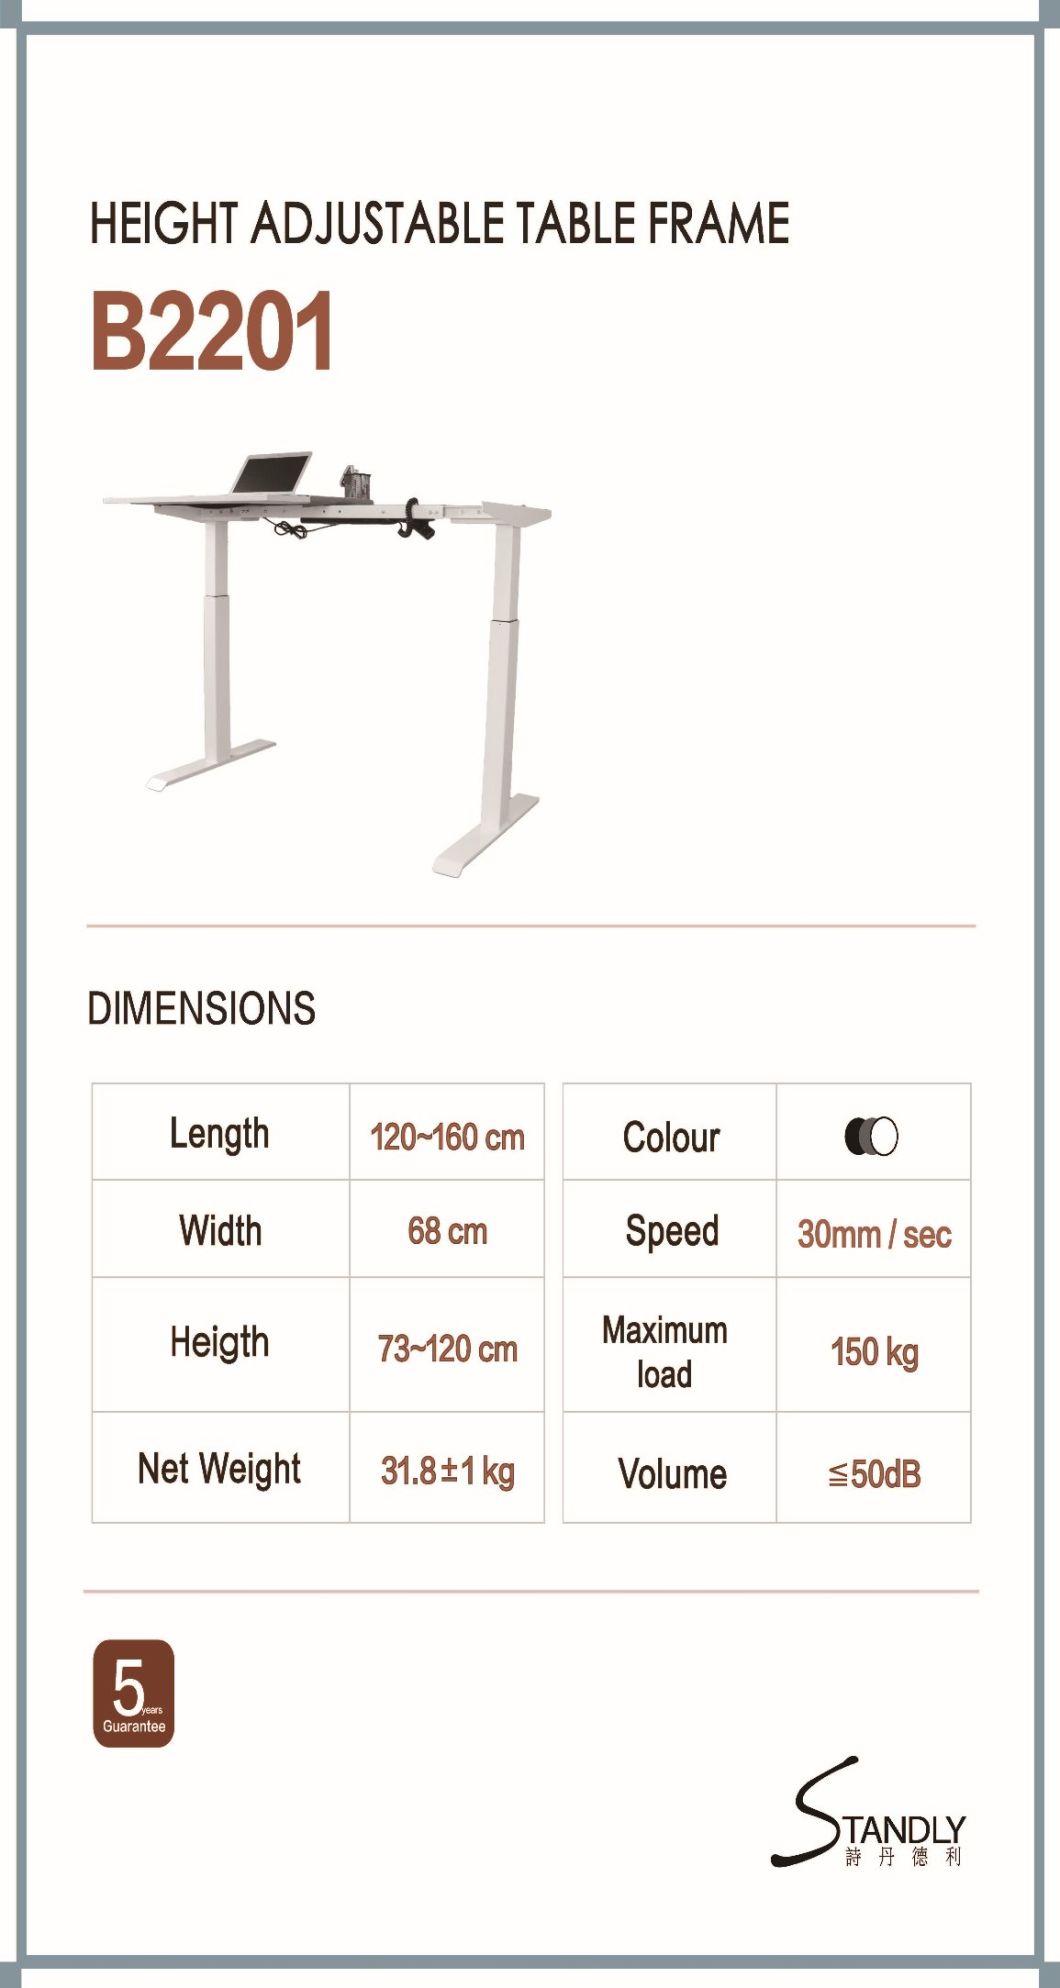 Electric Lift Table Standing Computer Desk Home Desk Office Desk Mobile Desk Bedroom Learning Desk Height Adjustable Desk with Single Motor